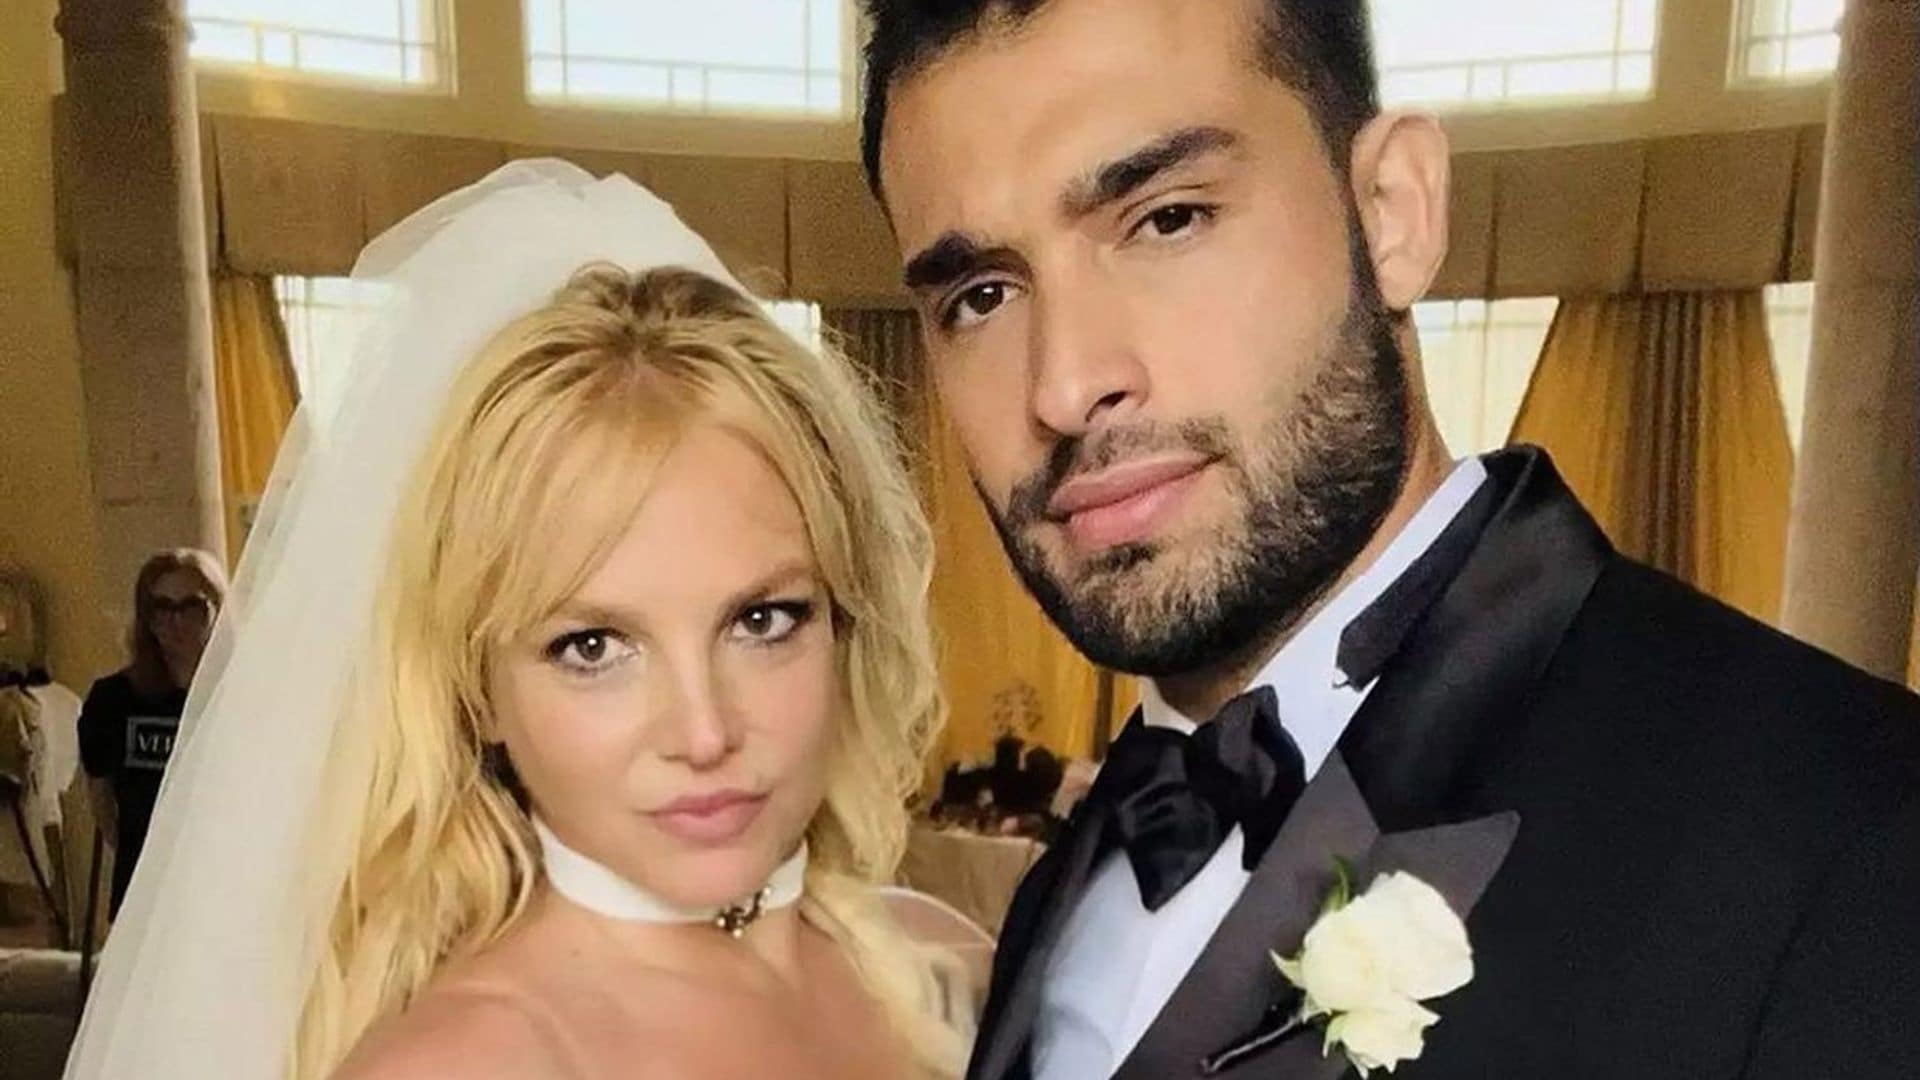 Los detalles del acuerdo prenupcial con el que Britney Spears blindó su fortuna antes de su boda con Sam Asghari